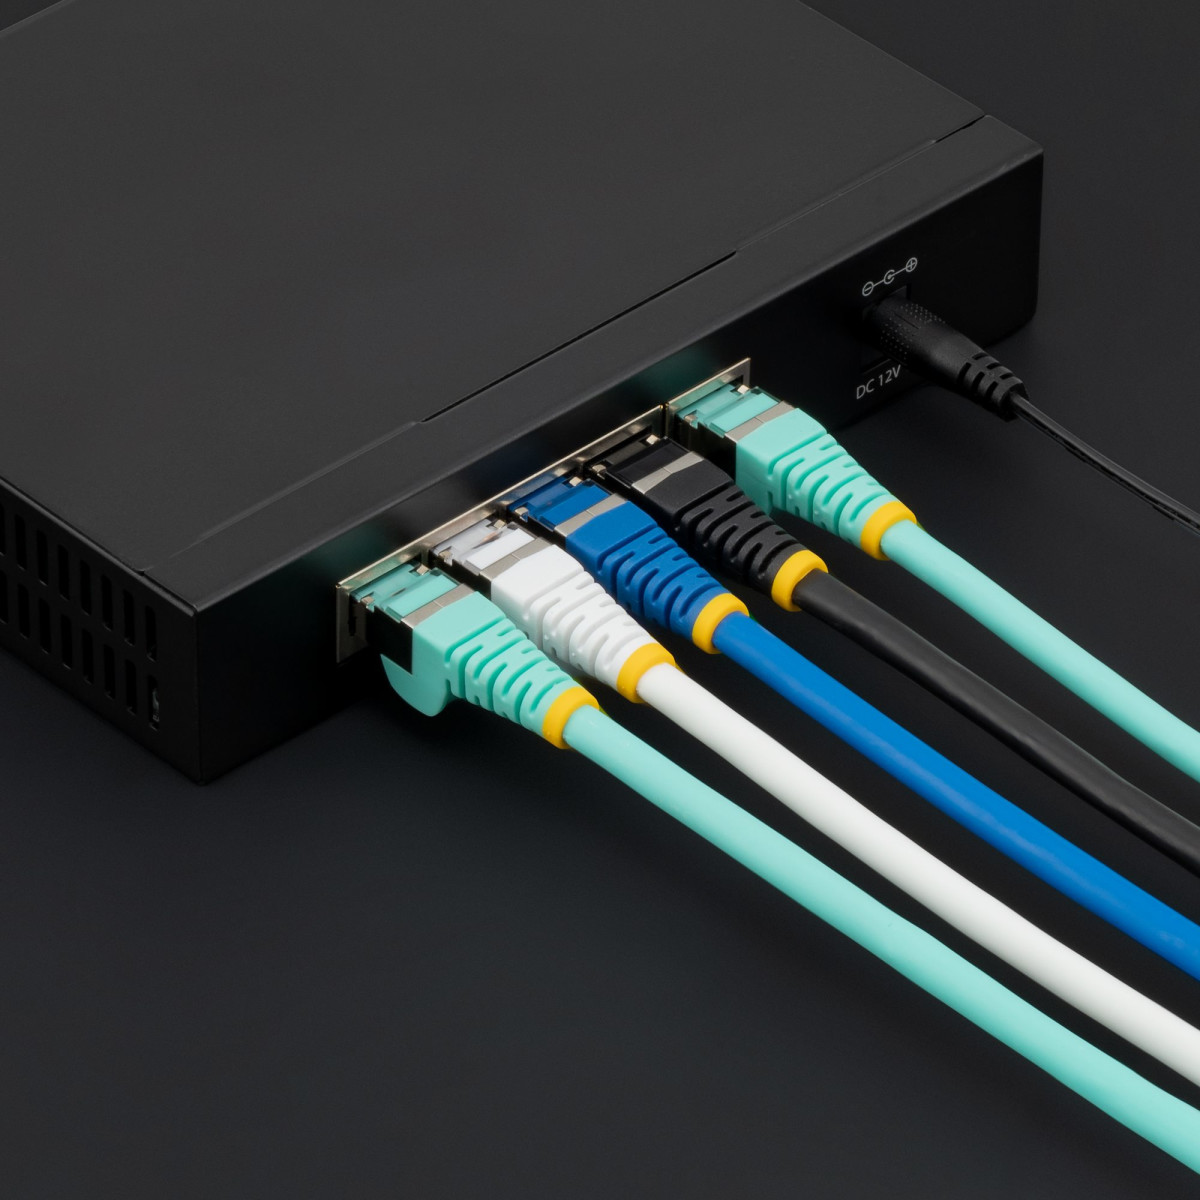 1m LSZH CAT6a Ethernet Cable - Blue